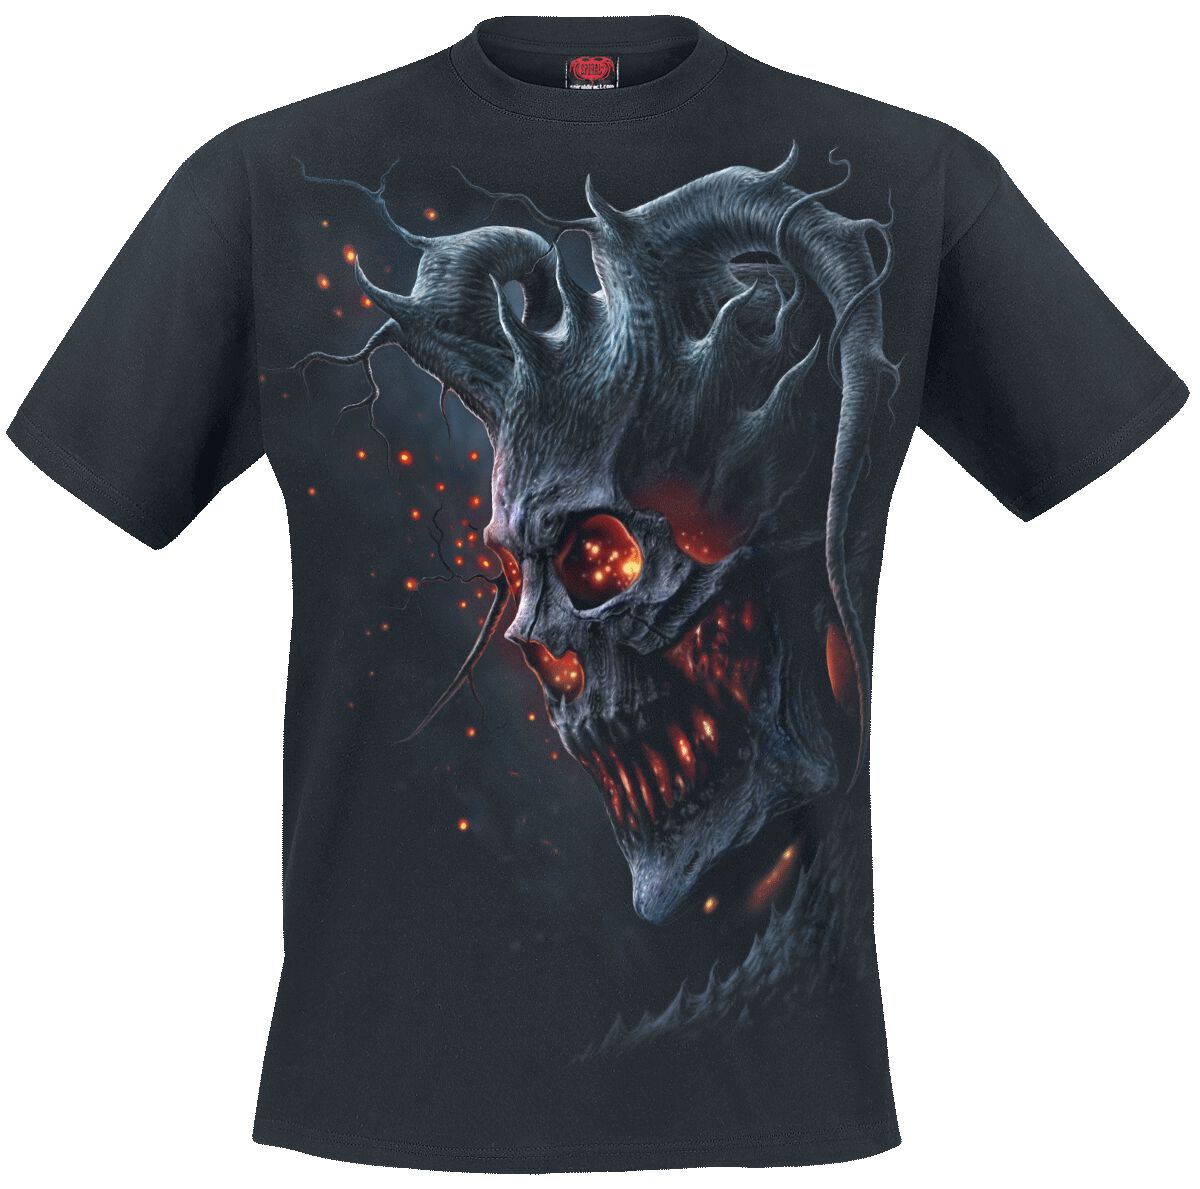 Spiral T-Shirt - Death Embers - S bis 4XL - für Männer - Größe 4XL - schwarz